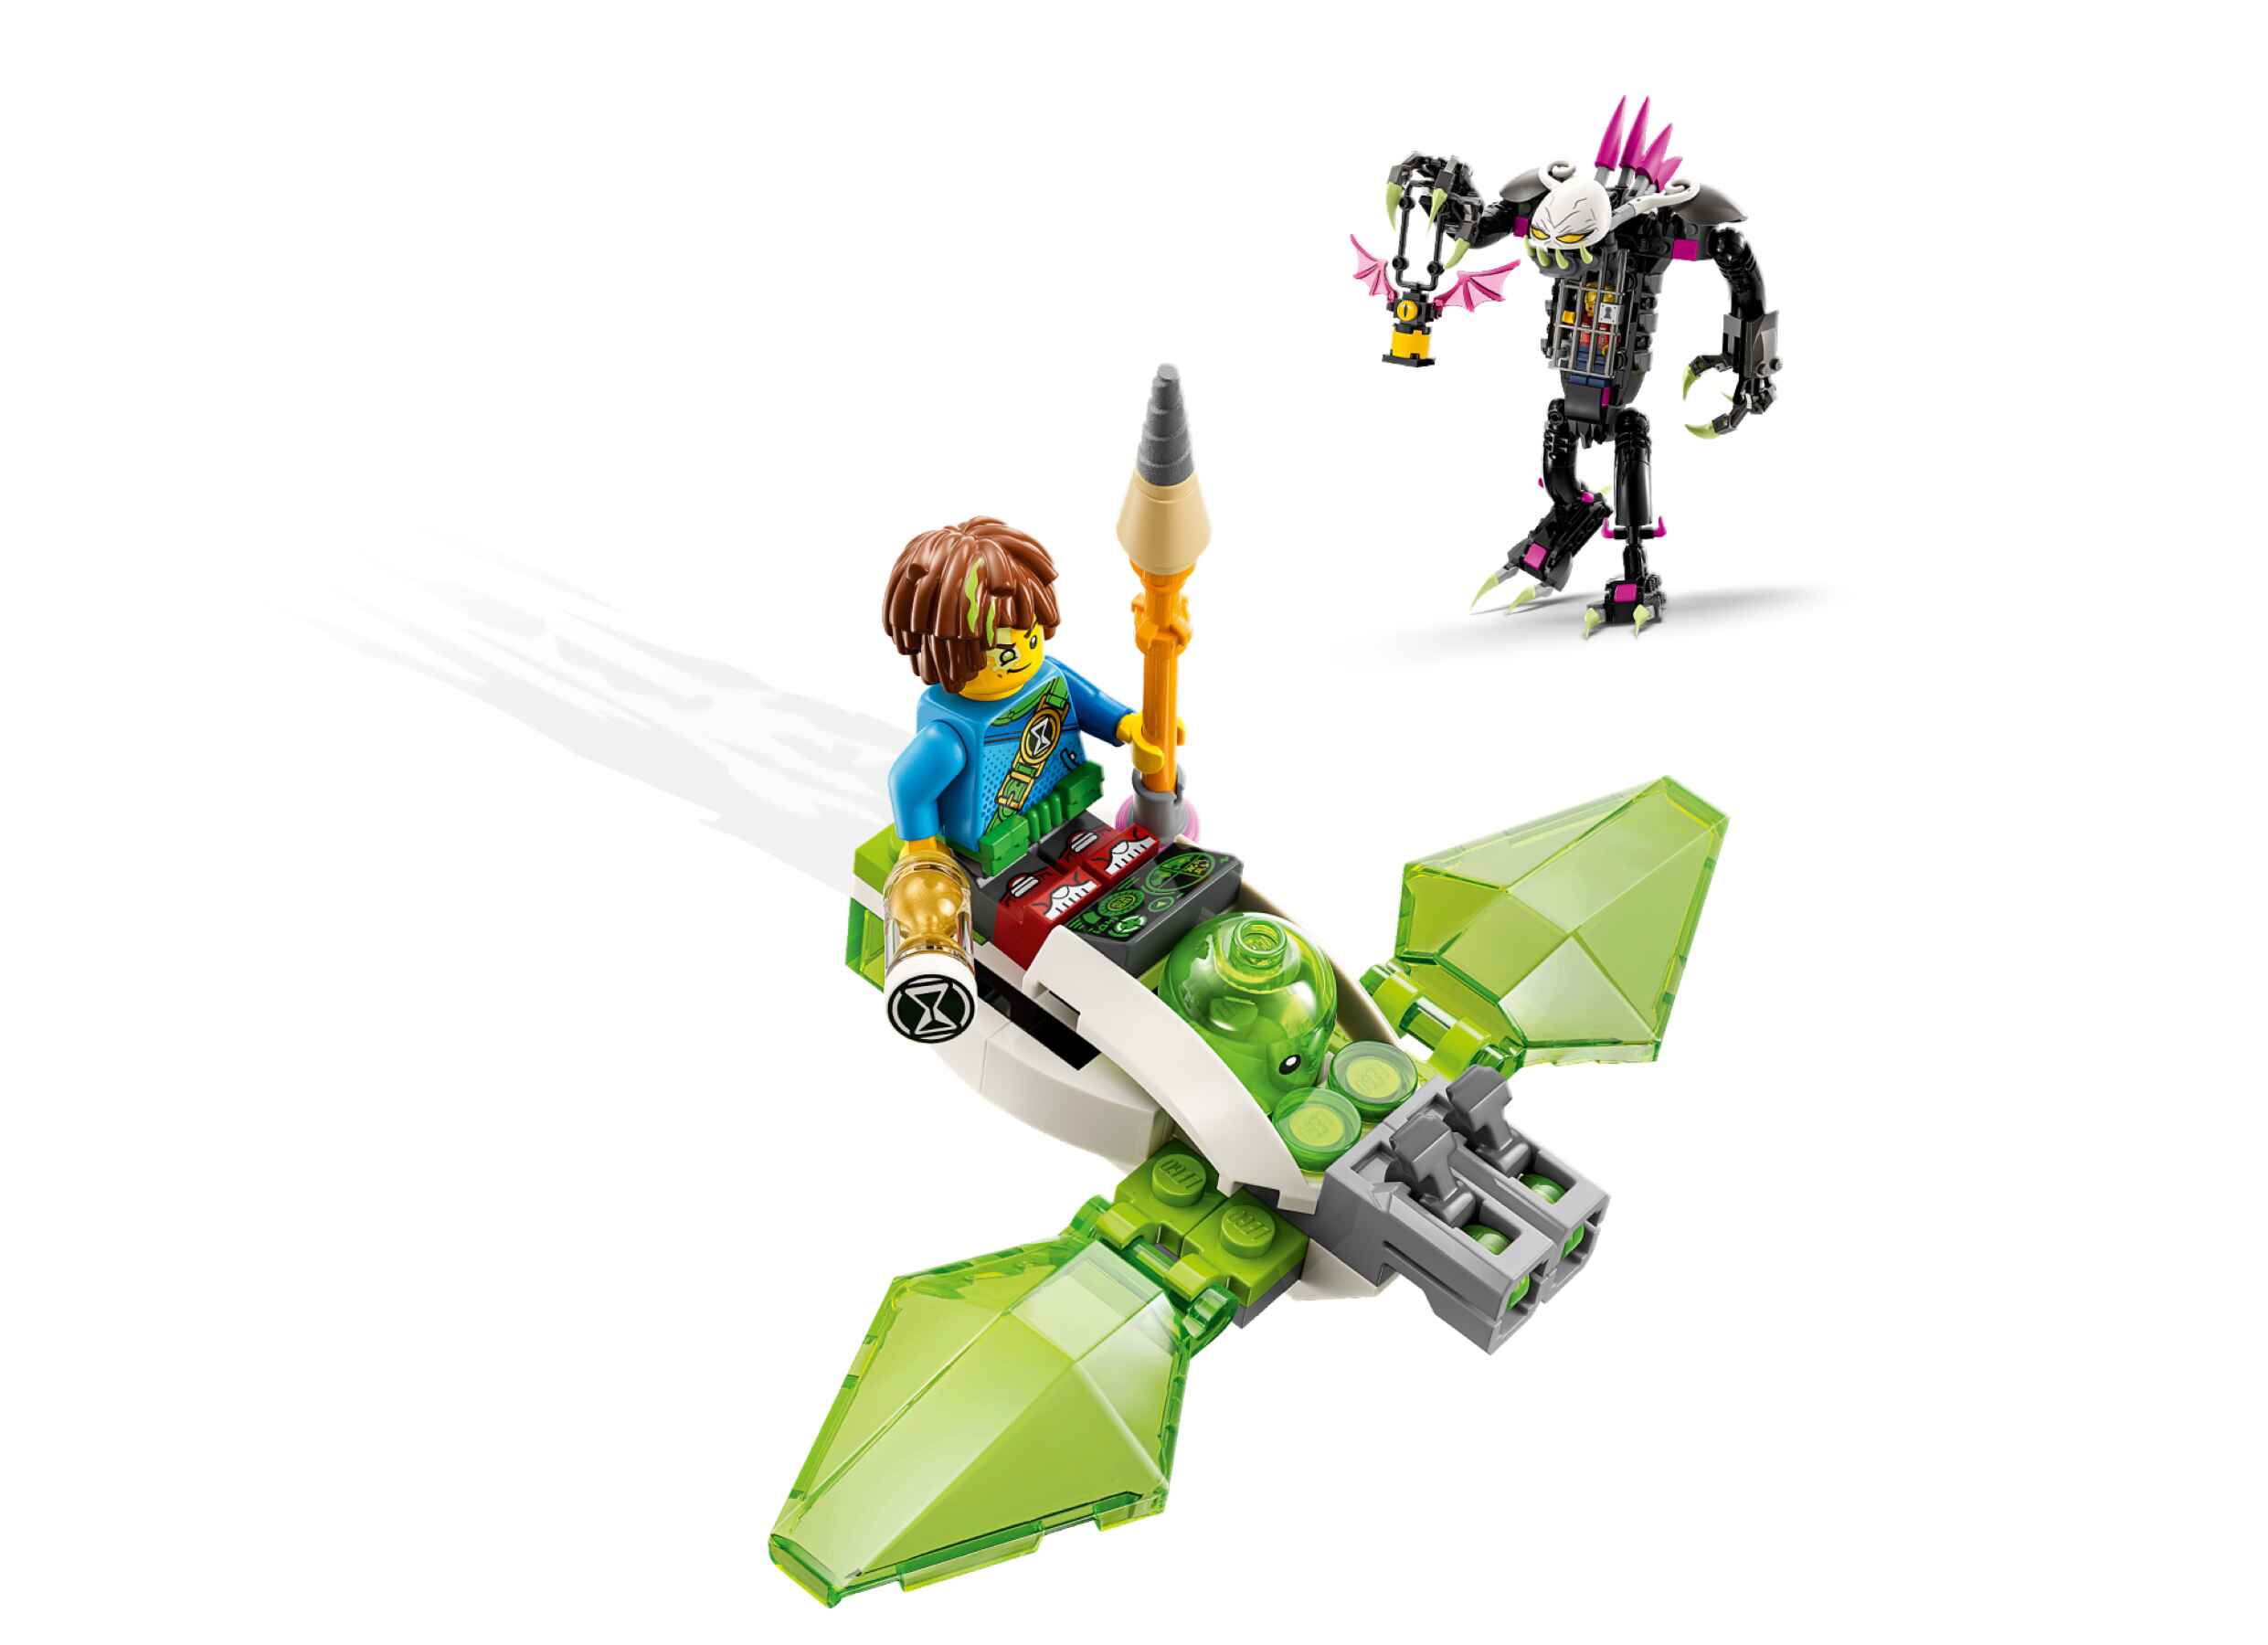 LEGO 71455 DREAMZzz Der Albwärter, voll bewegliche Figur, 2 Minifiguren